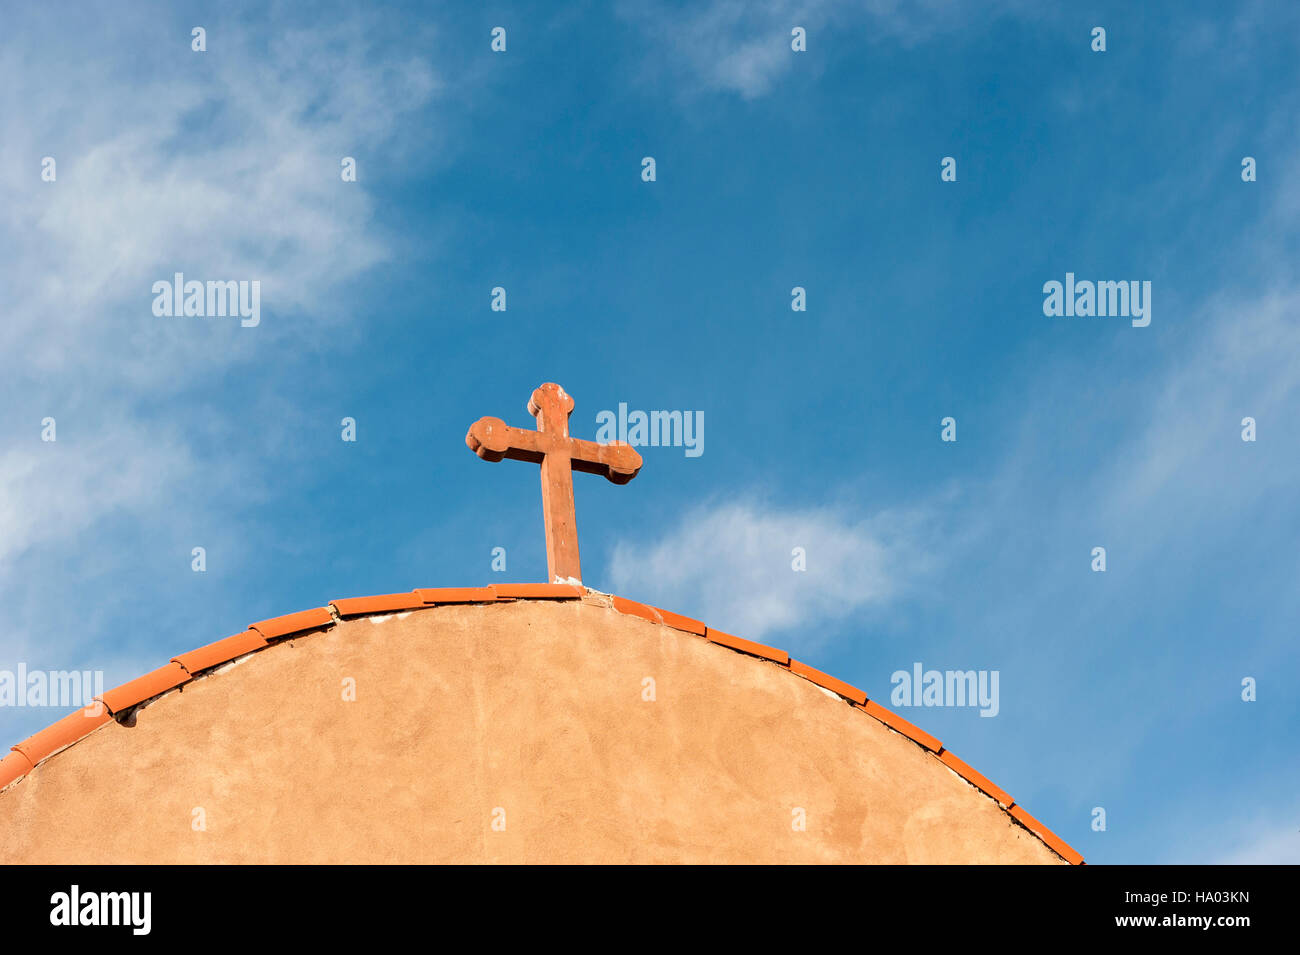 Croix de bois, crucifix au sommet d'une église typique de style adobe à San Antonio, comté de Socorro, Nouveau-Mexique, Etats-Unis Banque D'Images